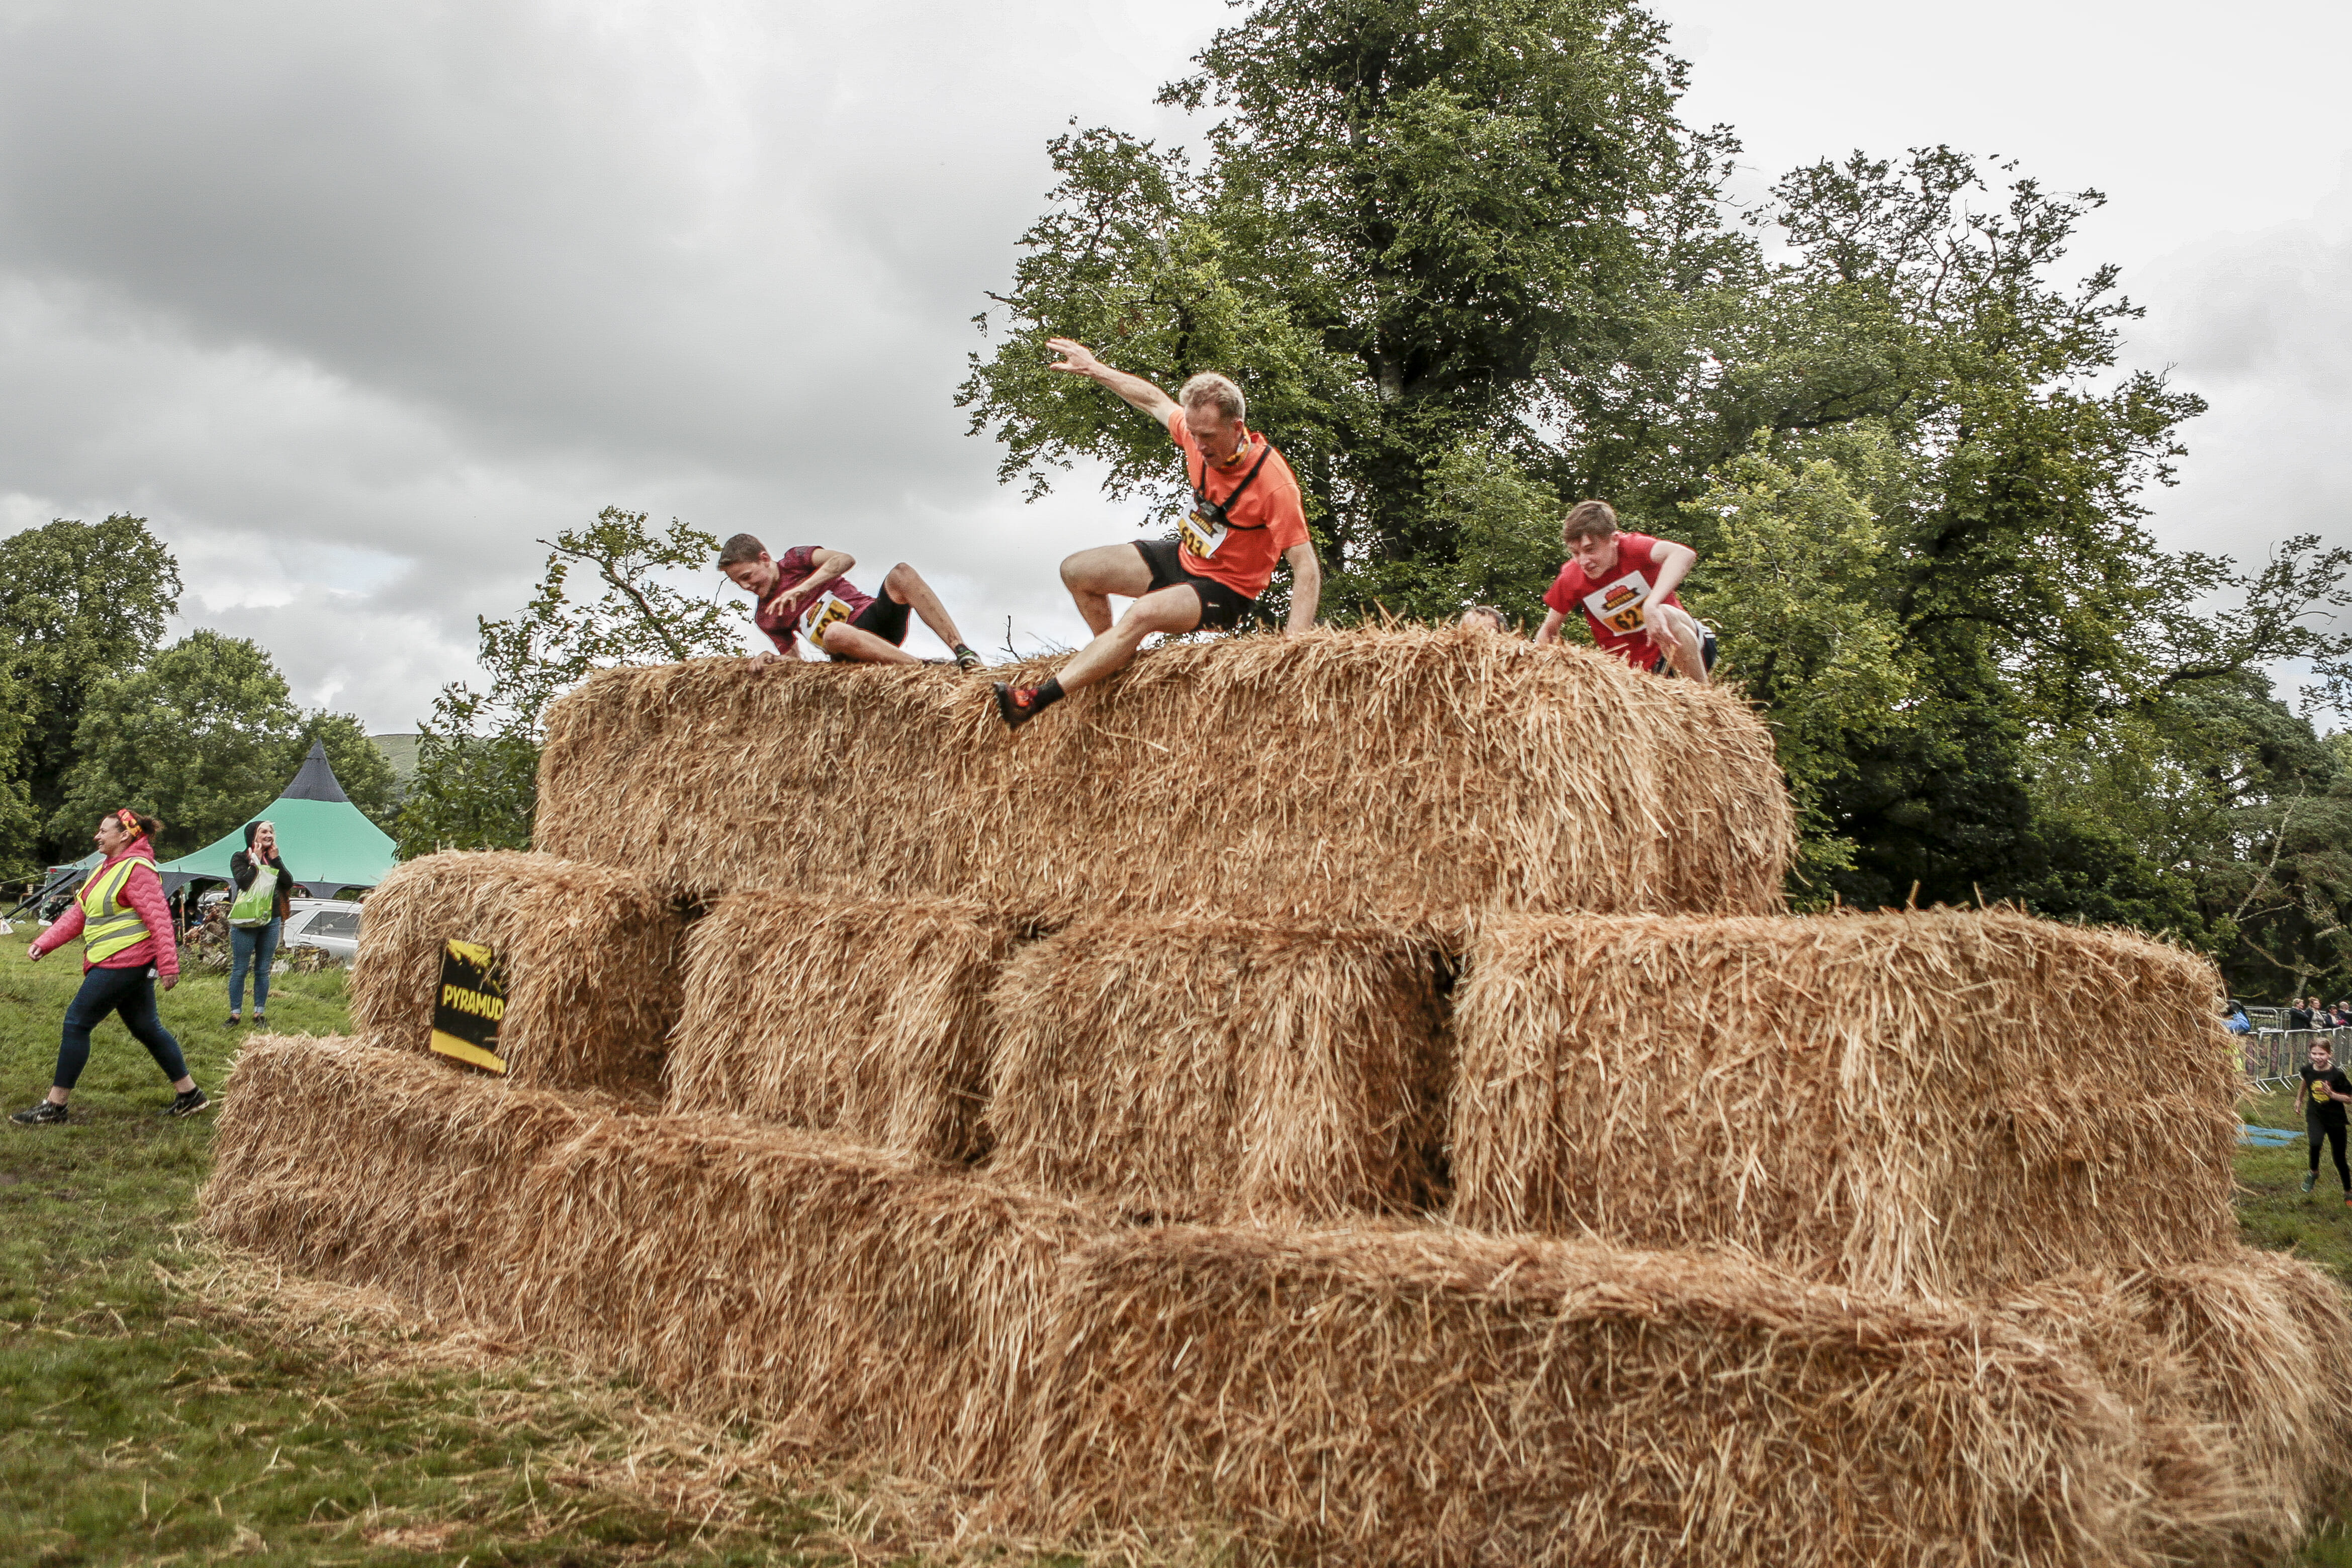 Racing over hay bales